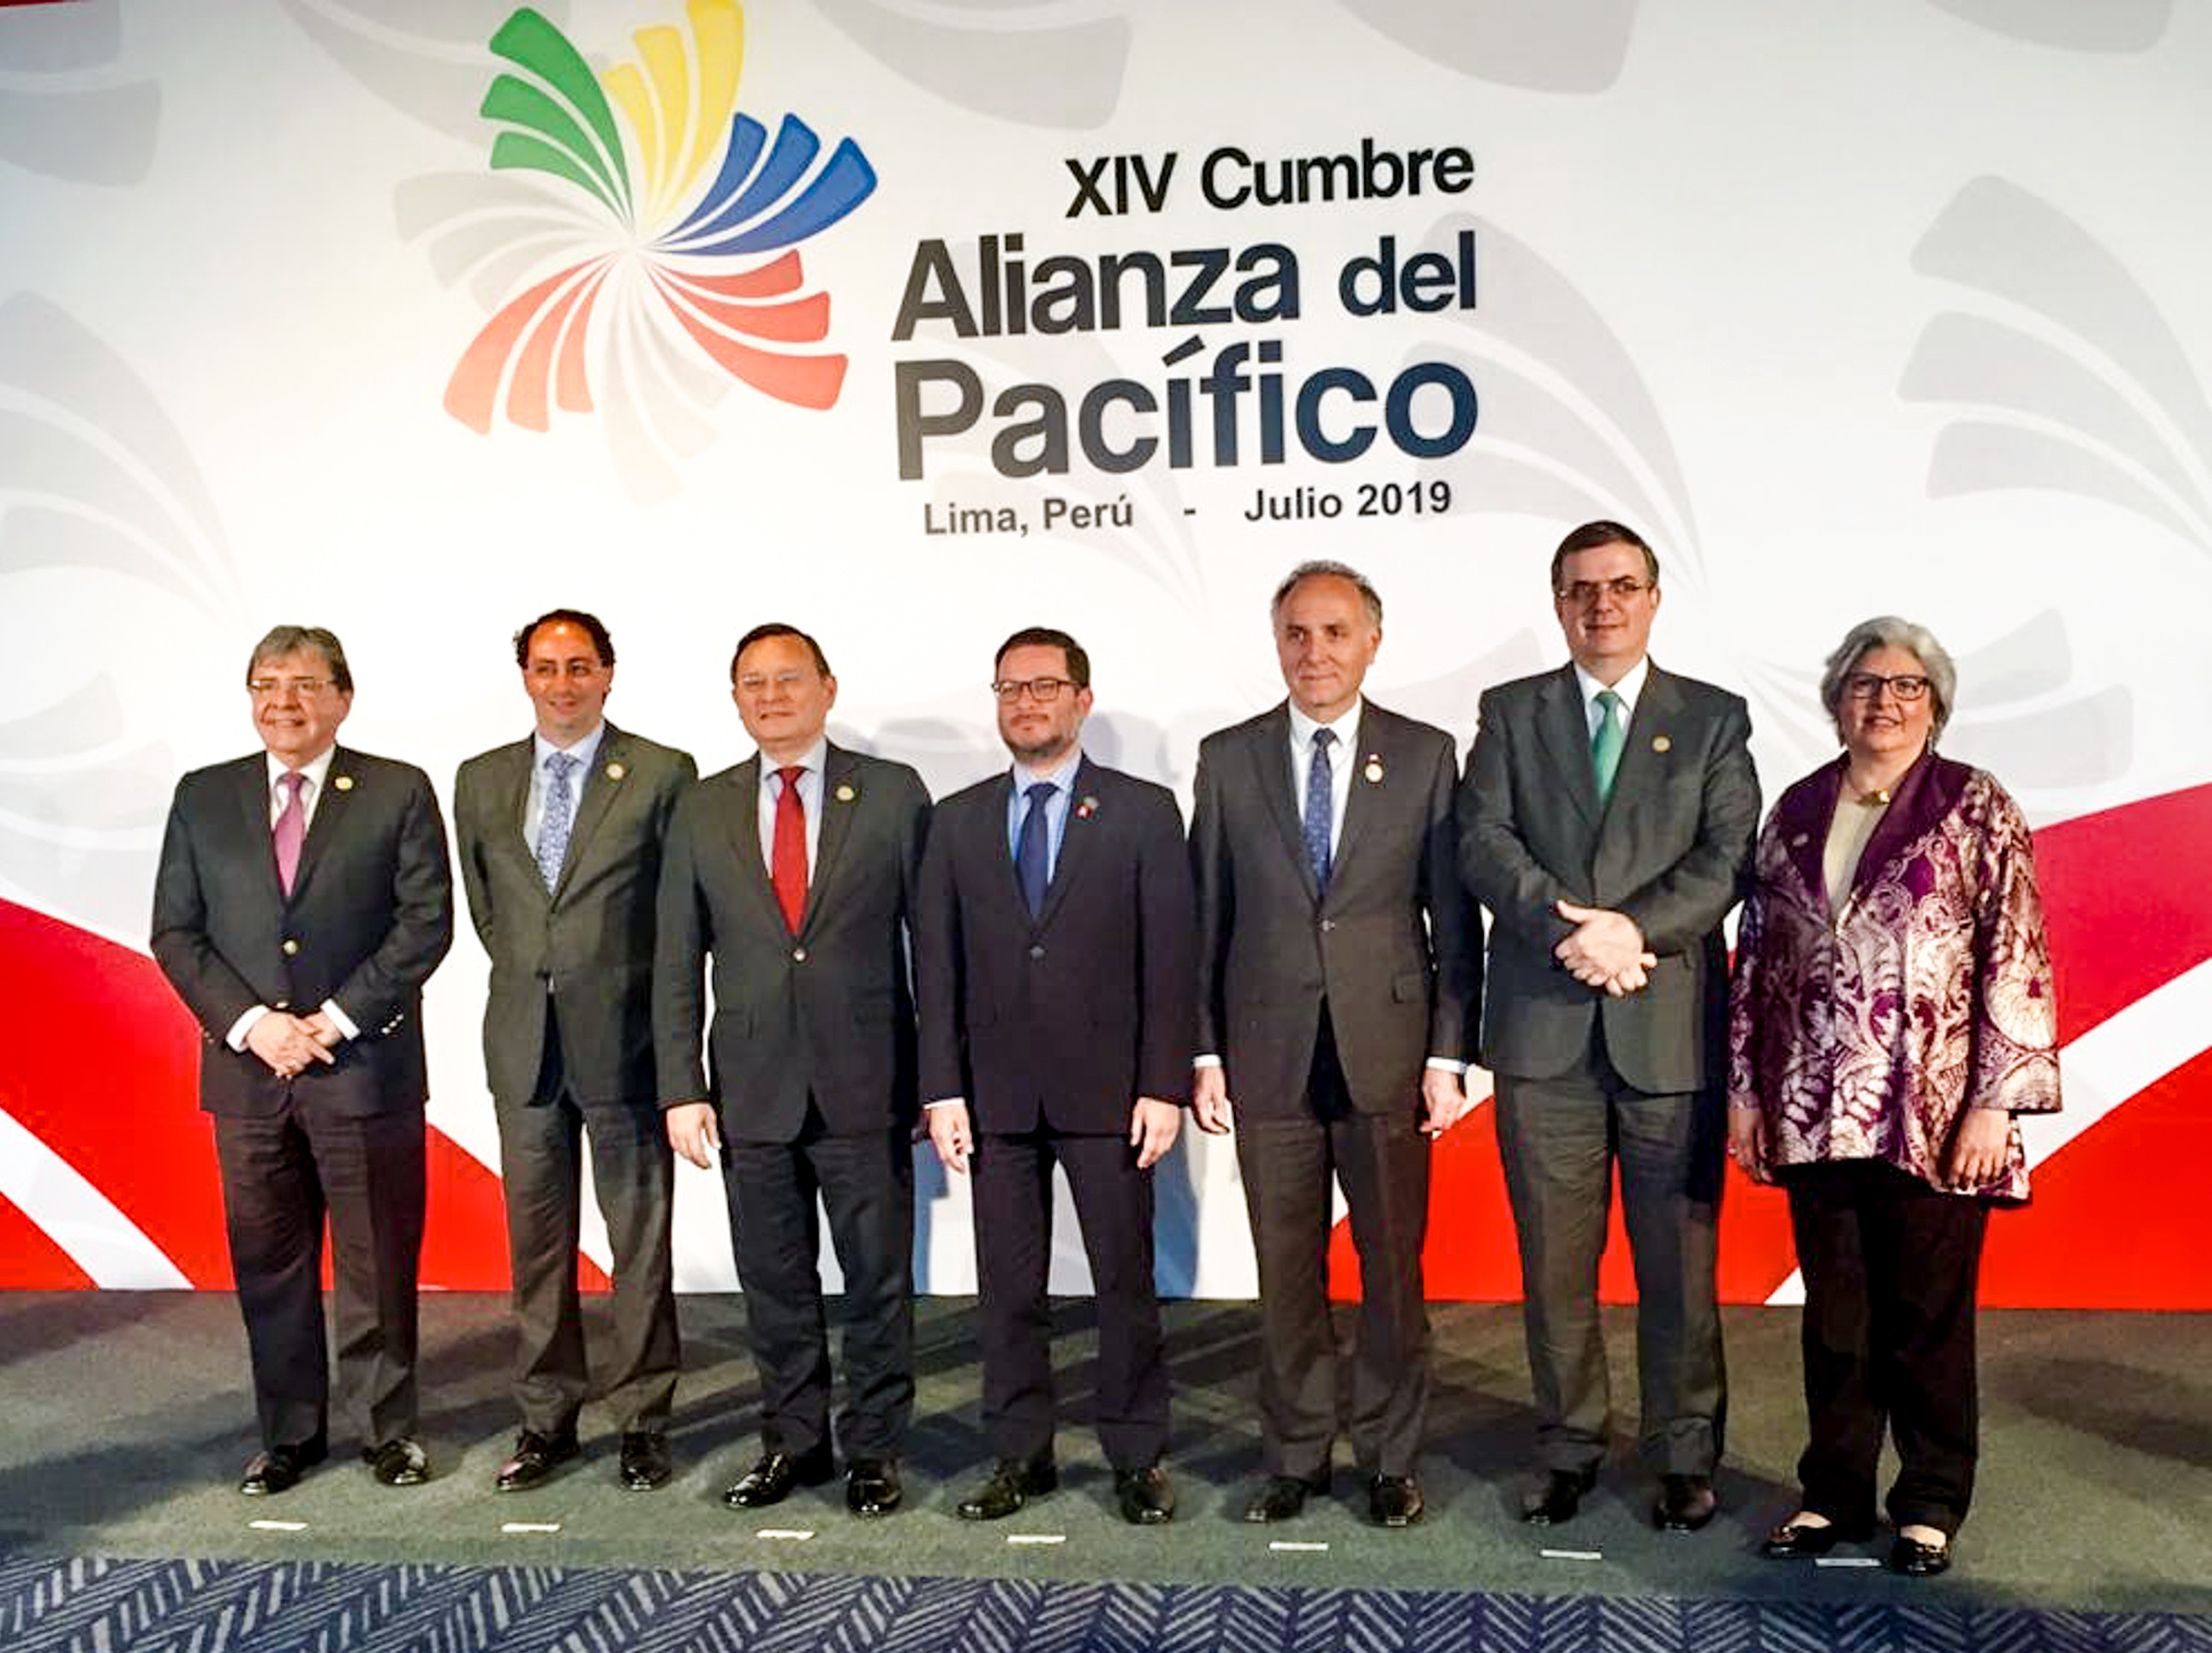 Alianza del Pacífico, Perú 2019